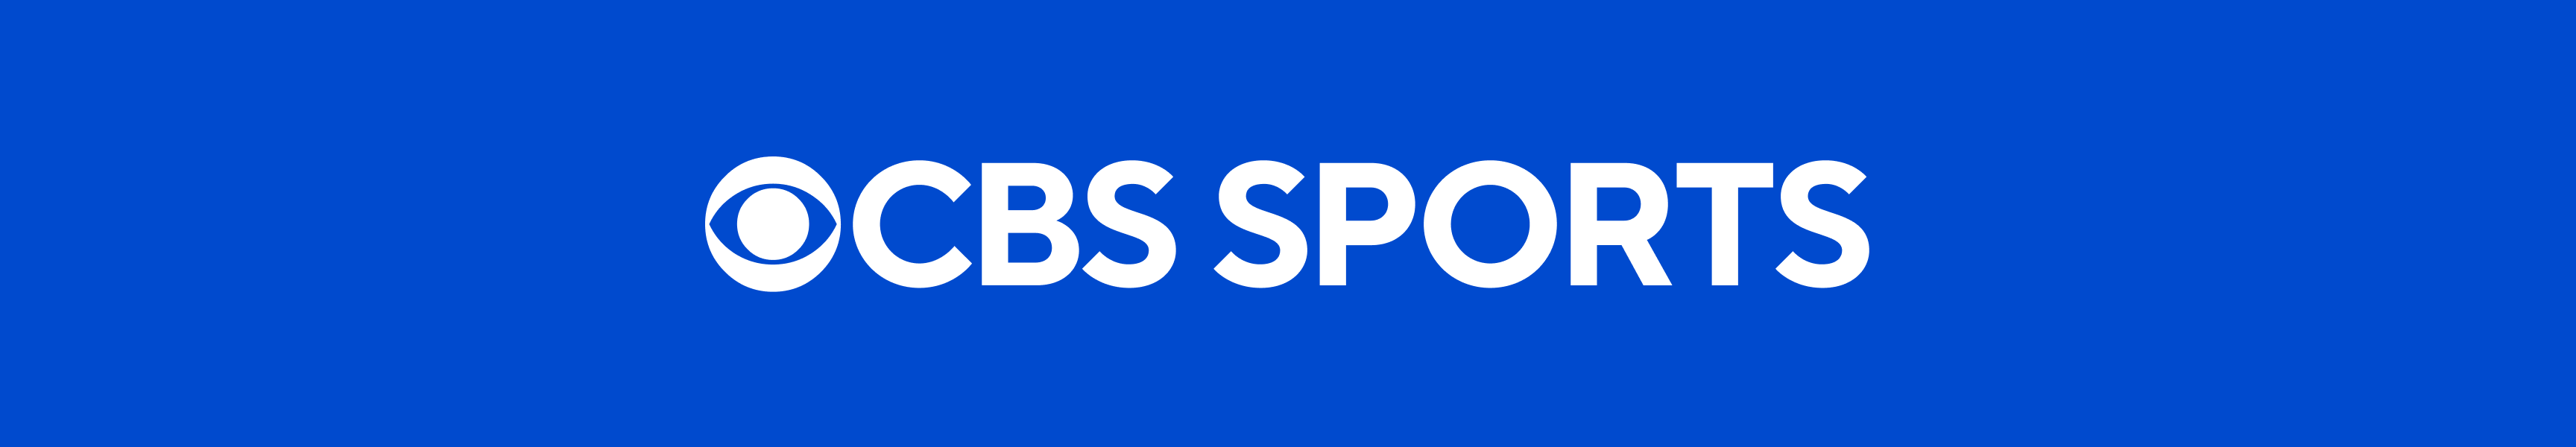 CBS Sports Tops